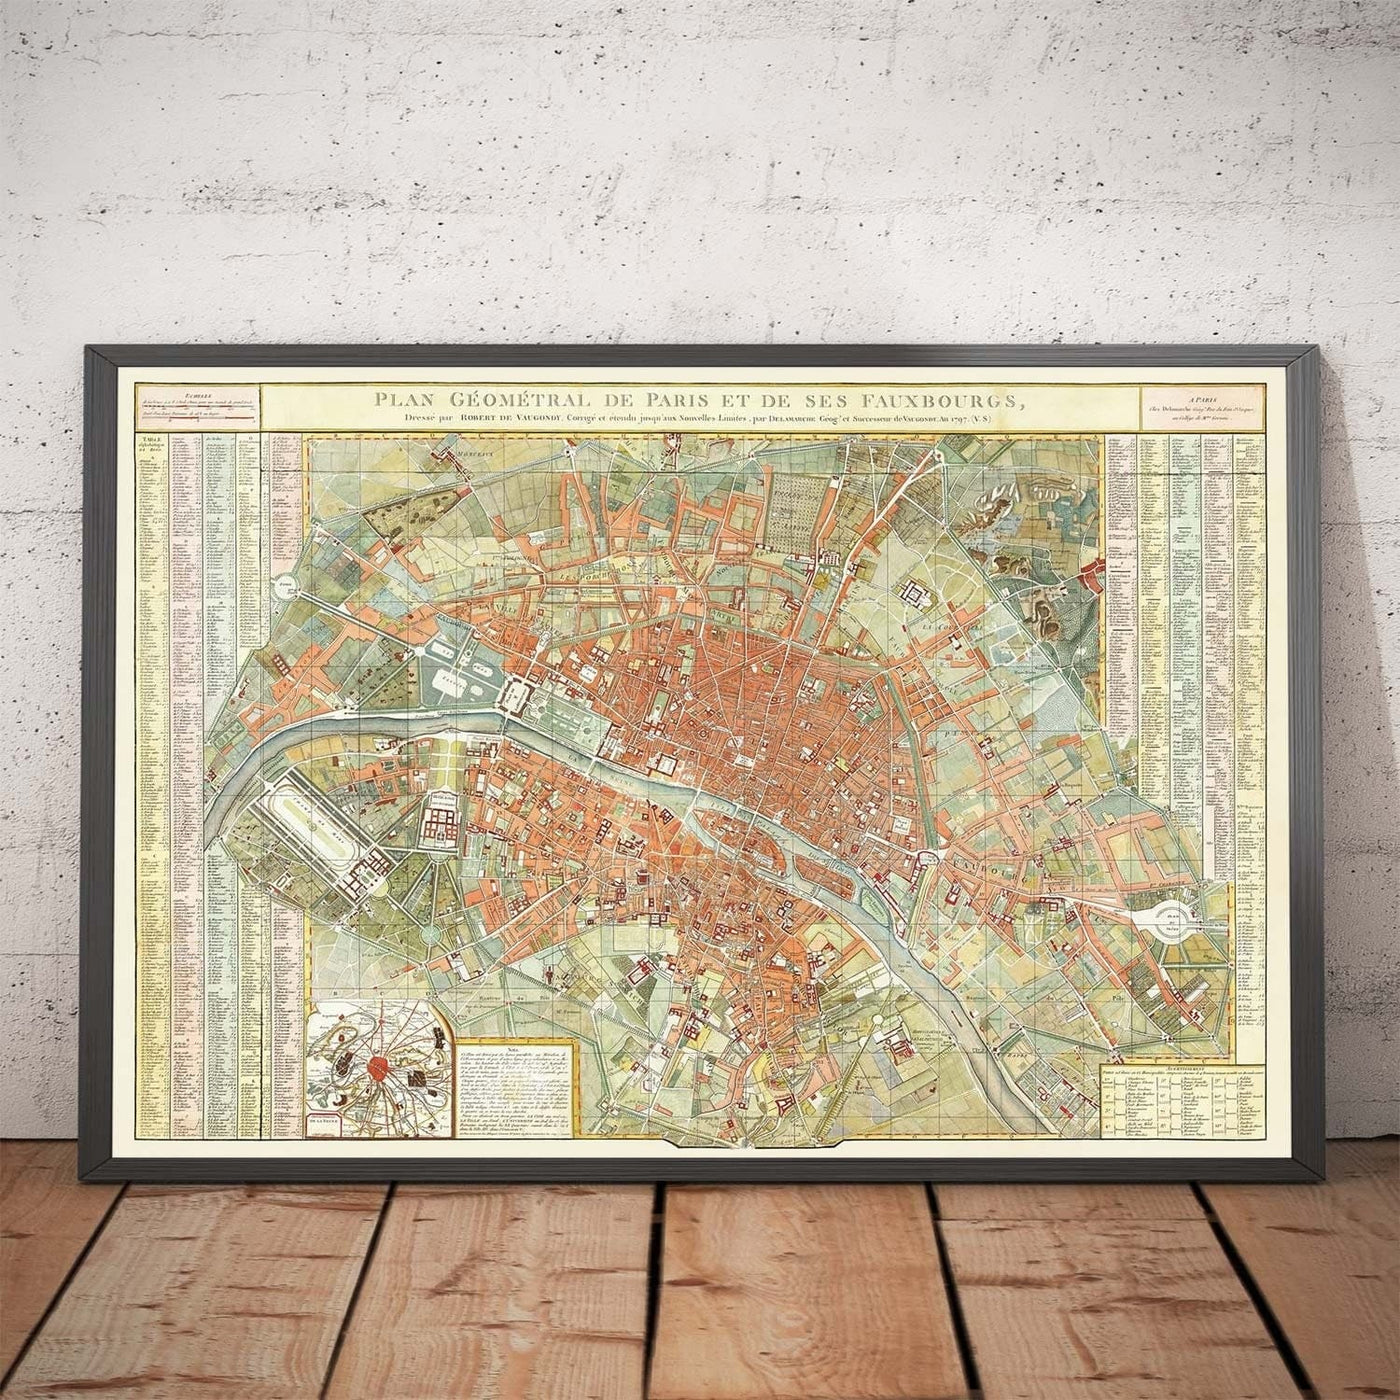 Old Map of Paris, France by Delamarche in 1797 - Louvre, Notre Dame, Sainte-Chapelle, Seine, Revolution, Invalides